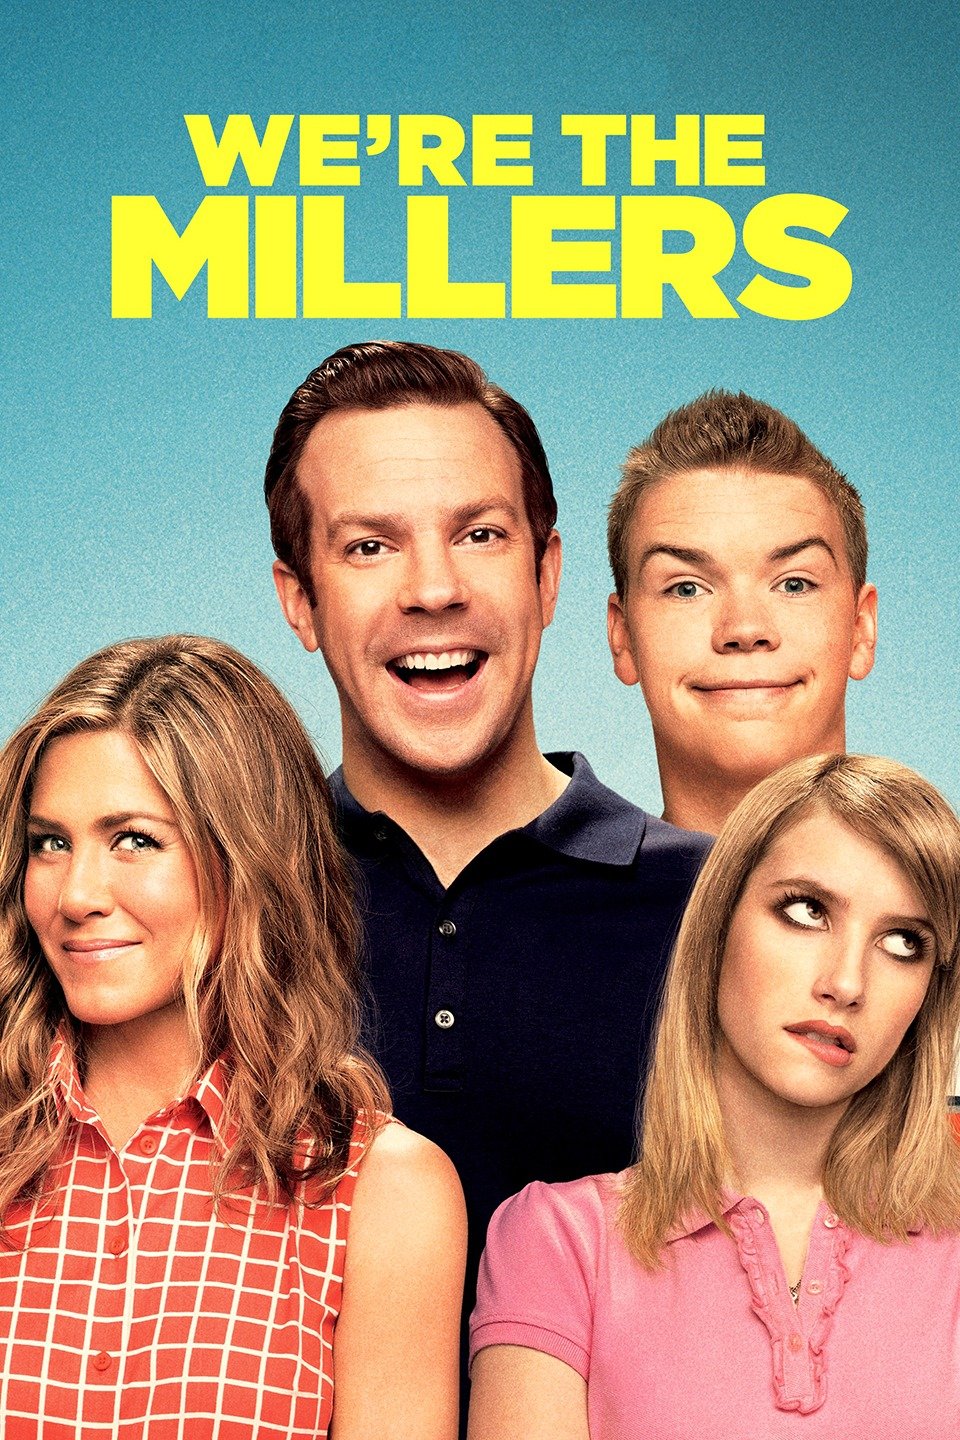 [MINI-HD] We’re the Millers (2013) มิลเลอร์ มิลรั่ว ครอบครัวกำมะลอ [1080p] [พากย์ไทย 5.1] [ไม่มีบรรยาย] [เสียงไทยเท่านั้น] [OPENLOAD]